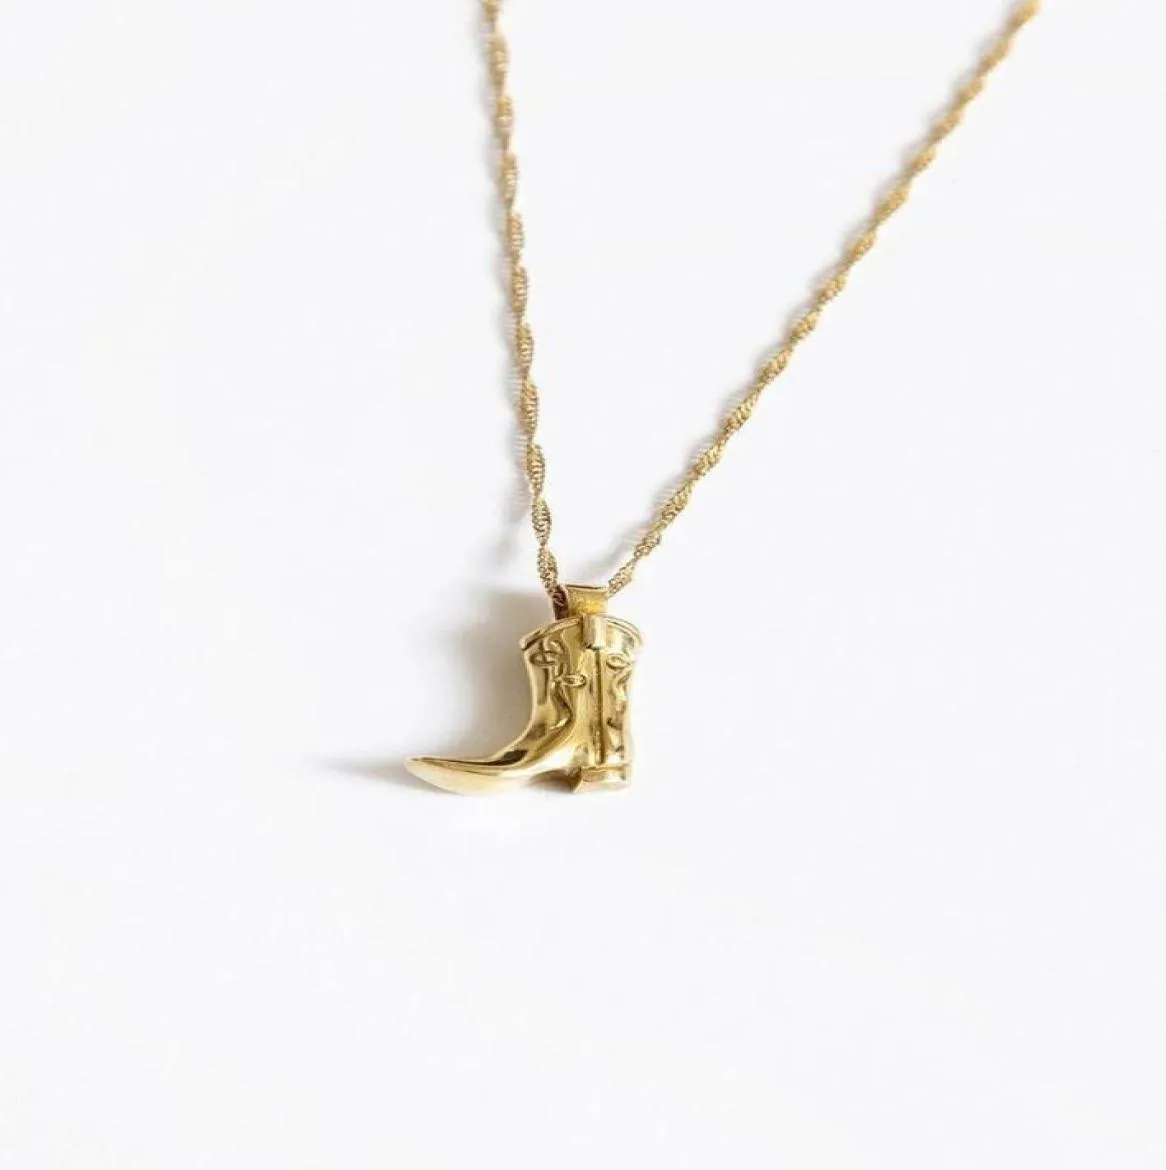 Ожерелья с подвесками COWBOY BOOT, ожерелье в стиле вестерн, золото 14 карат, латунь, гриб, абстрактное лицо, цельная эстетика, готика4762537